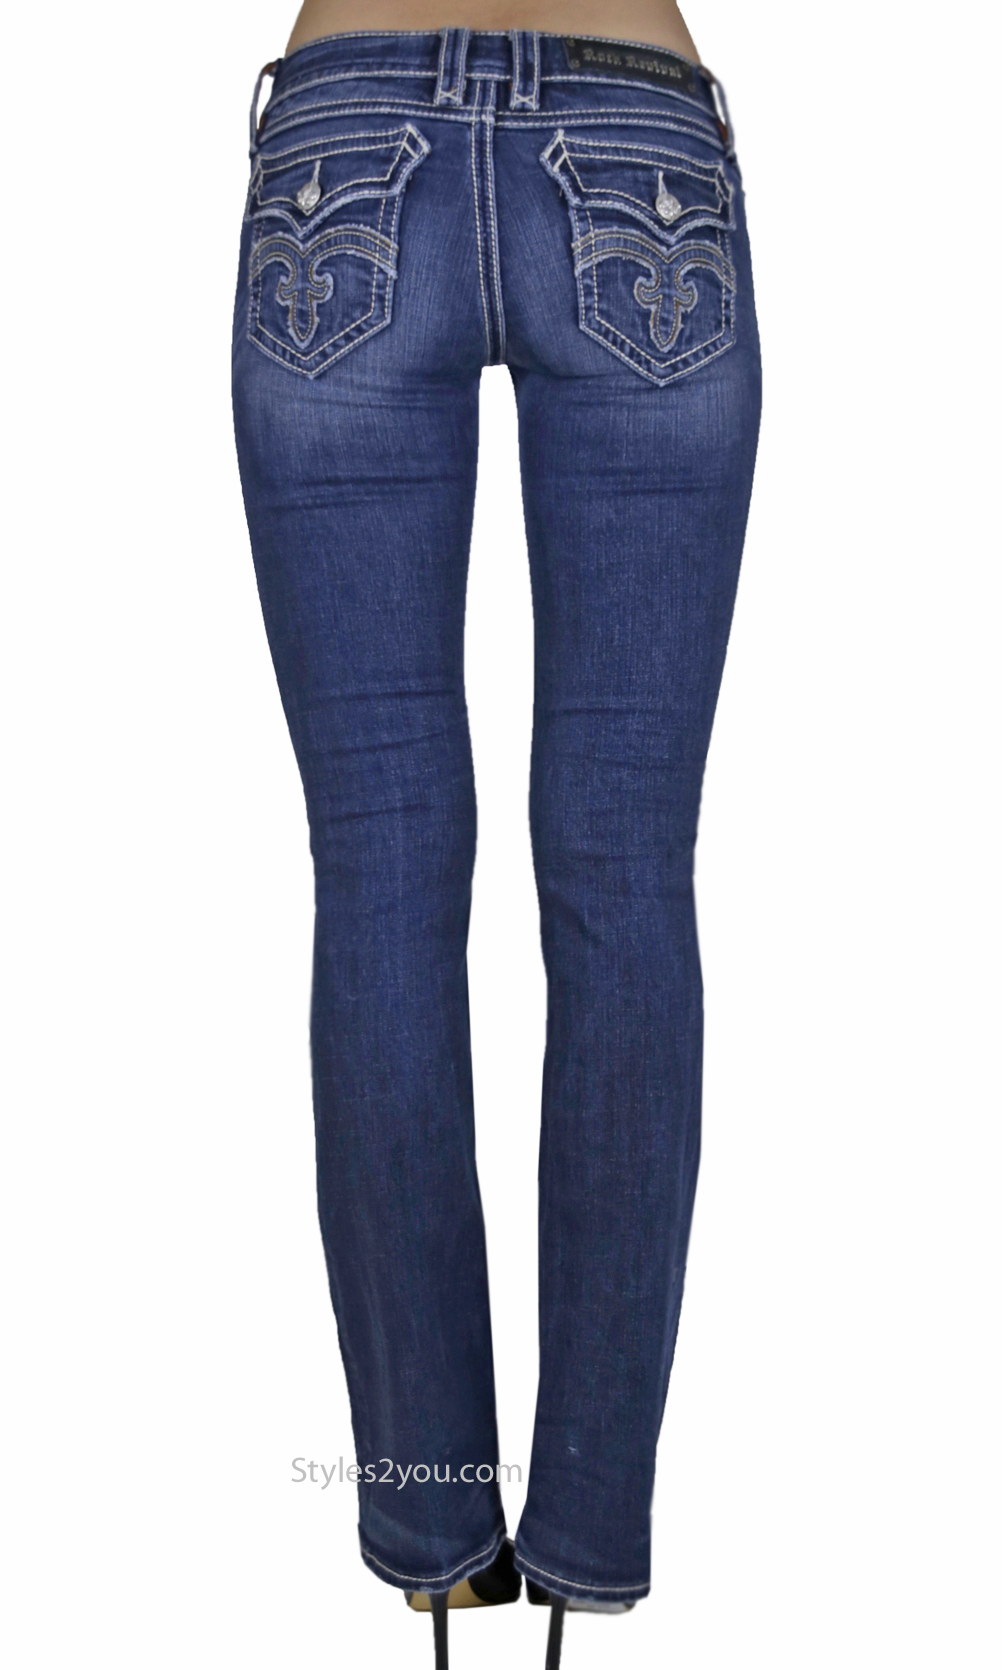 Ladies Bootcut Jeans debbie ladies bootcut jeans medium blue denim rock revival jean · « FDUPFEL